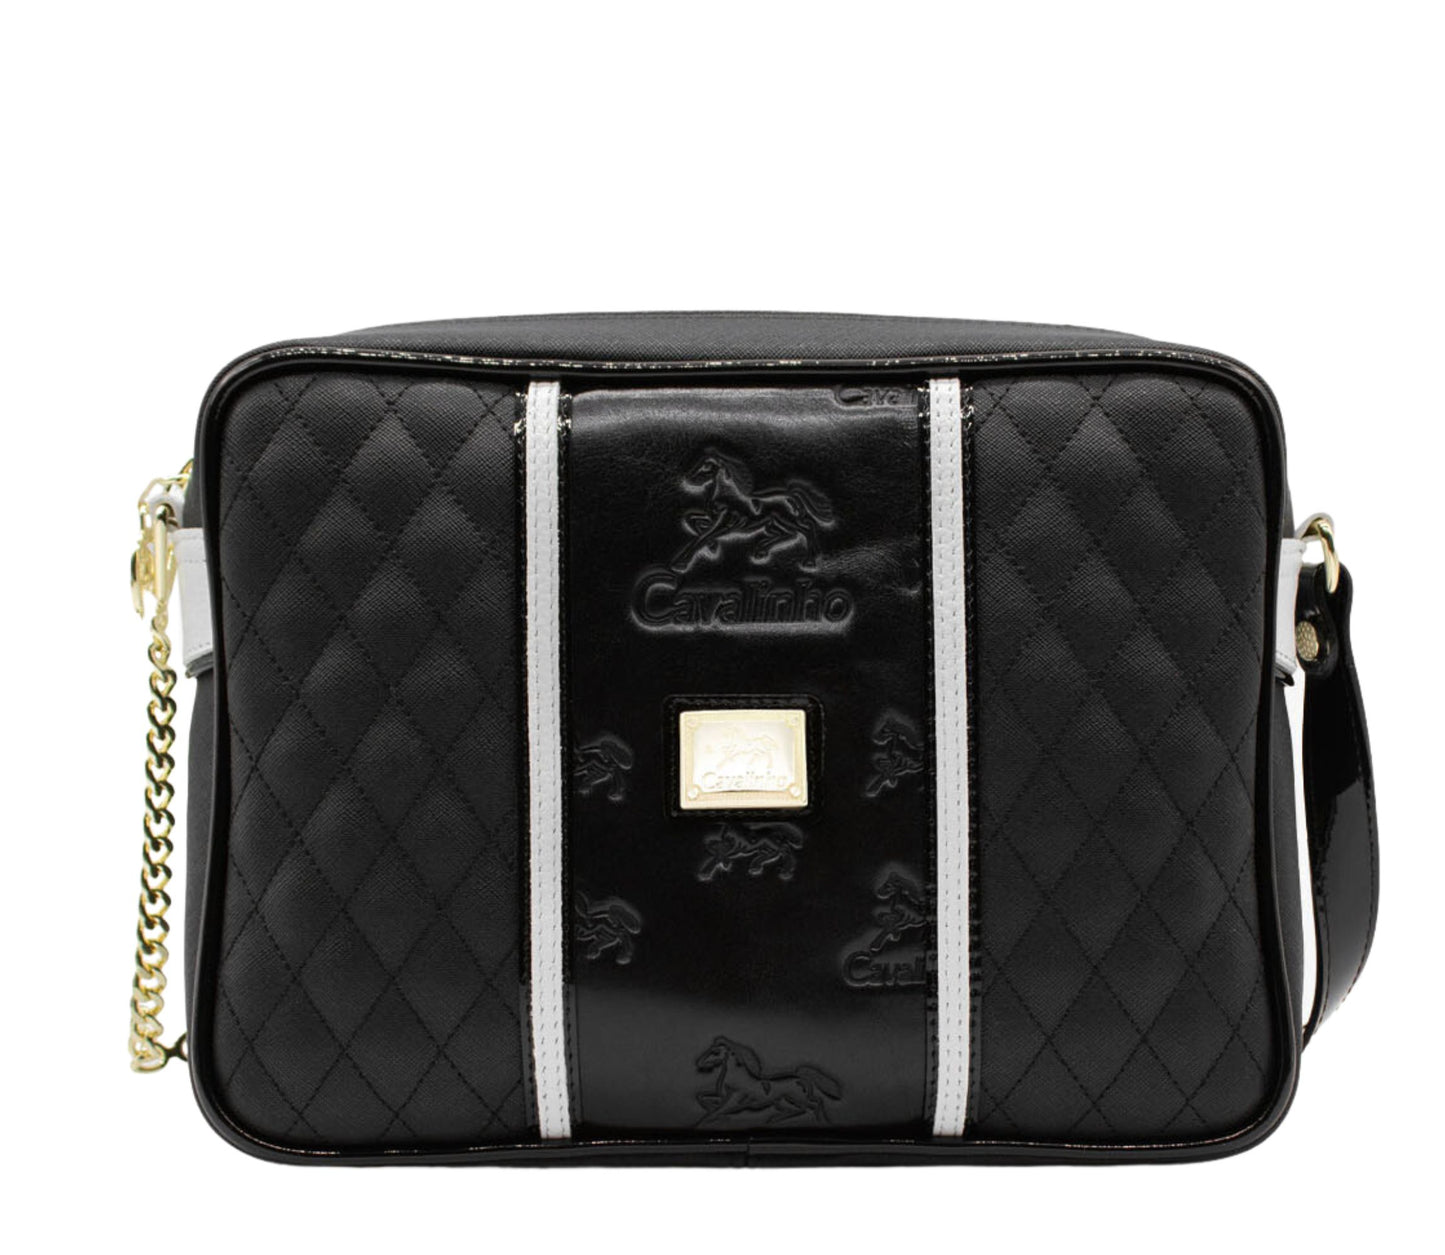 #color_ Black and White | Cavalinho Royal Crossbody Bag - Black and White - 18390251.21.99